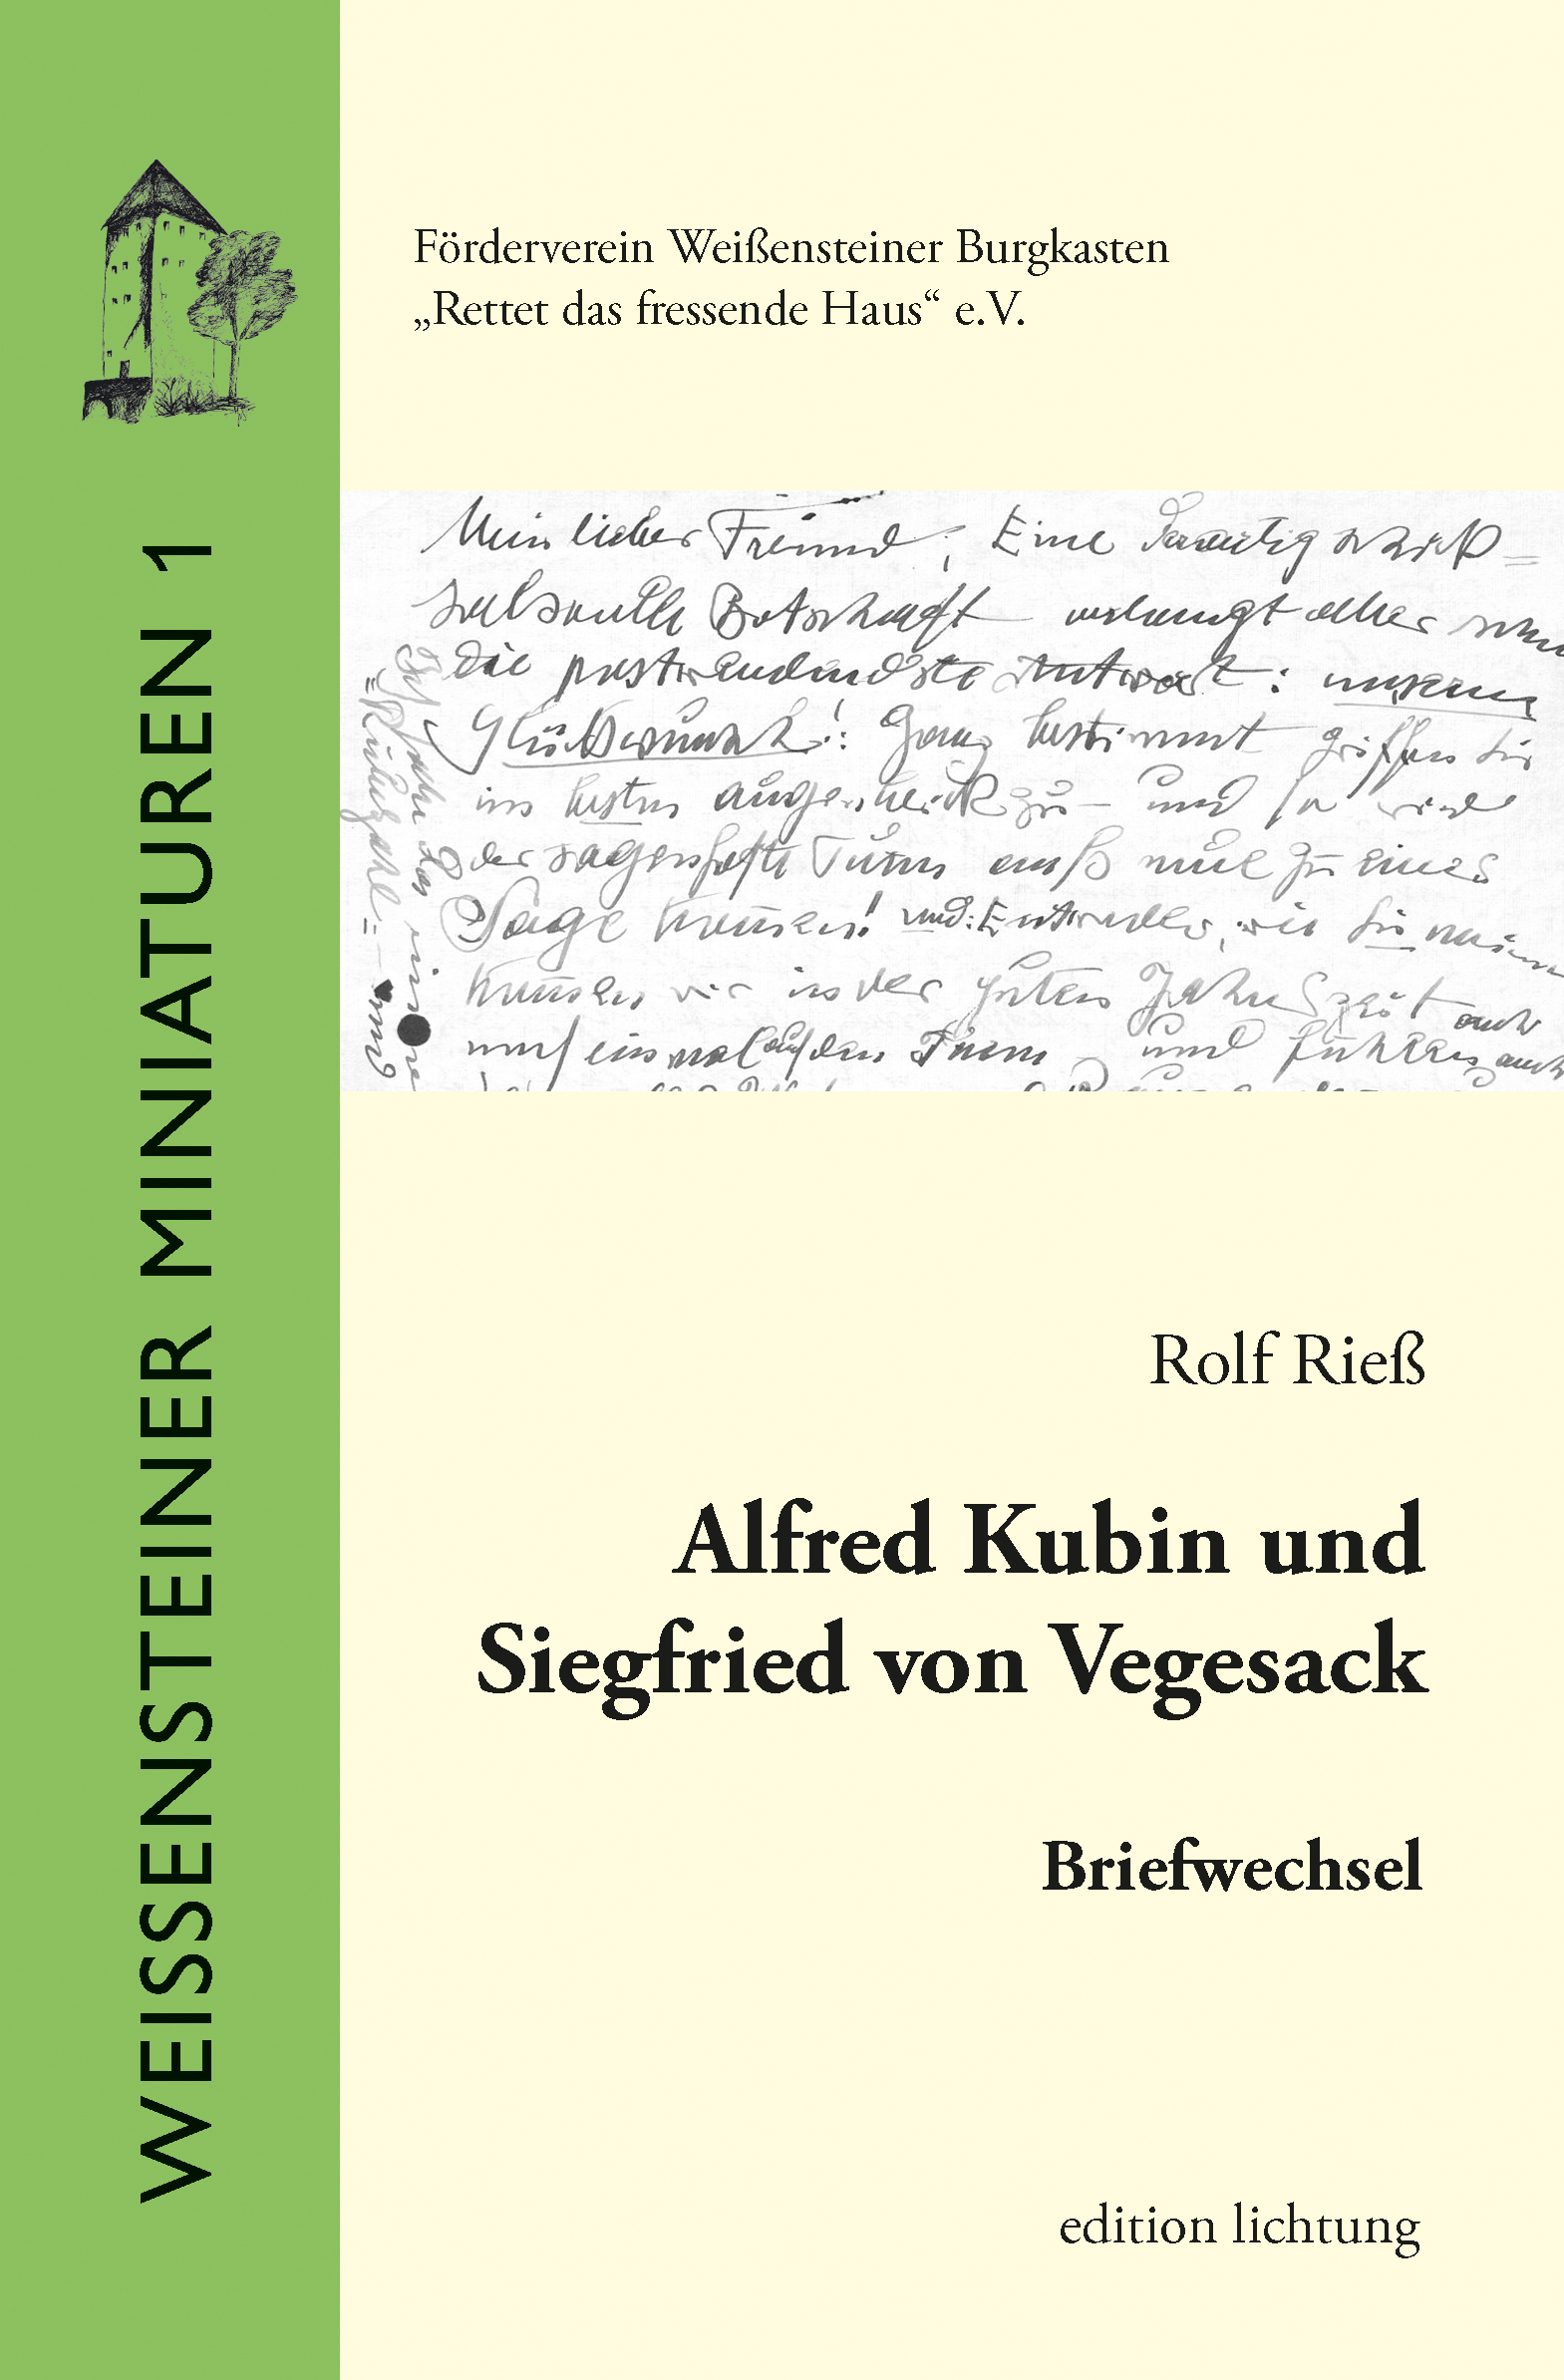 Band 1: Alfred Kubin und Siegfried von Vegesack